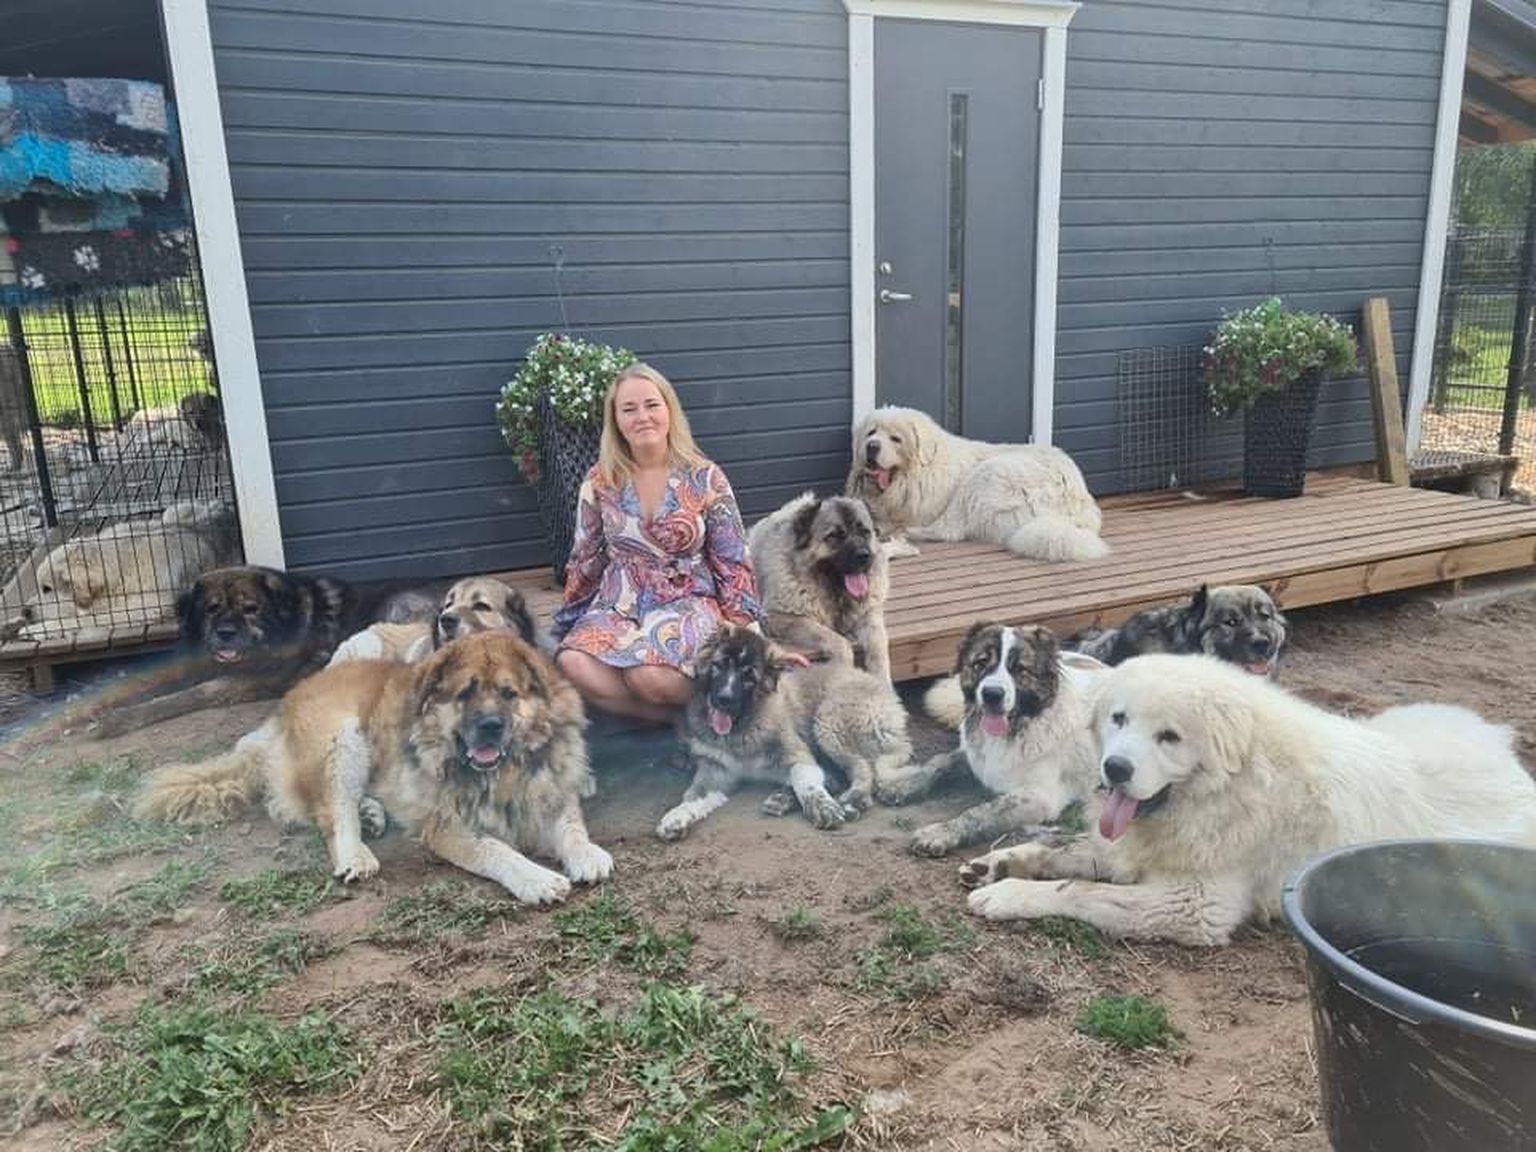 Koerakasvataja Lily Mals paigaldas pärast kahe koera hukkumist enda loomade kaitseks valvekaamerad.